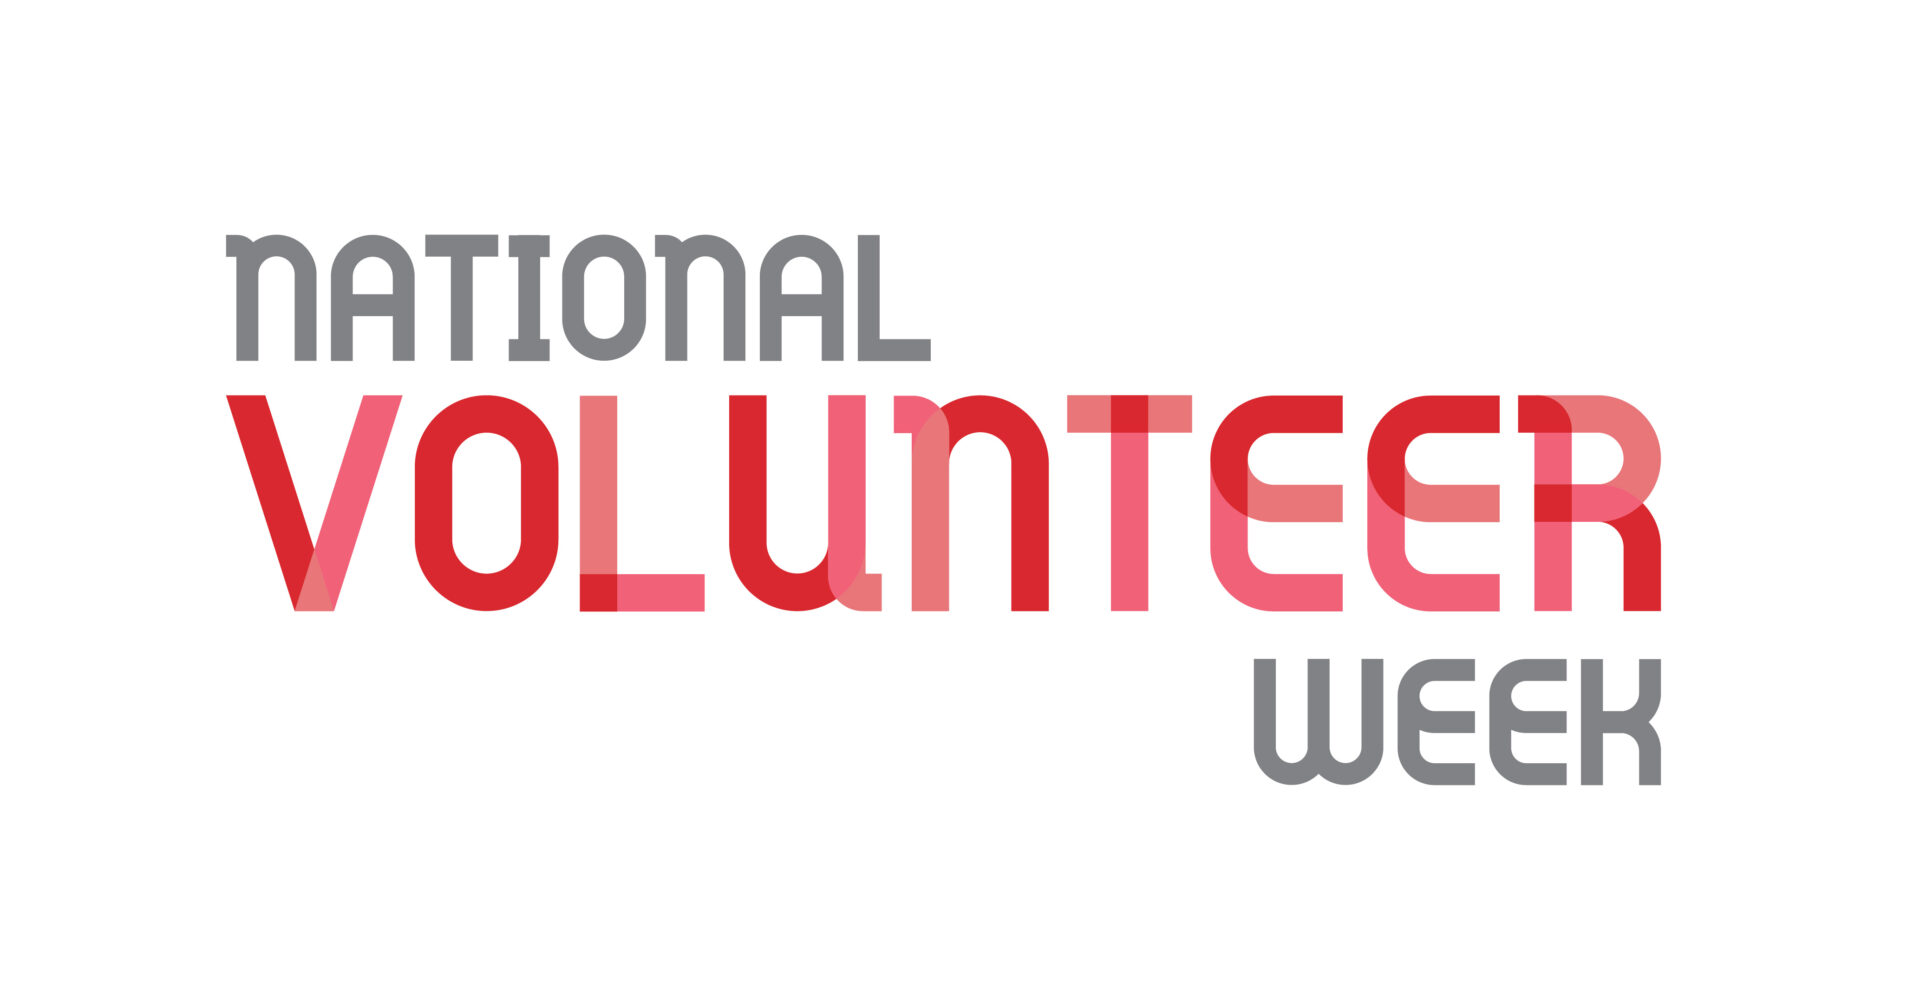 National Volunteer Week Volunteering Australia